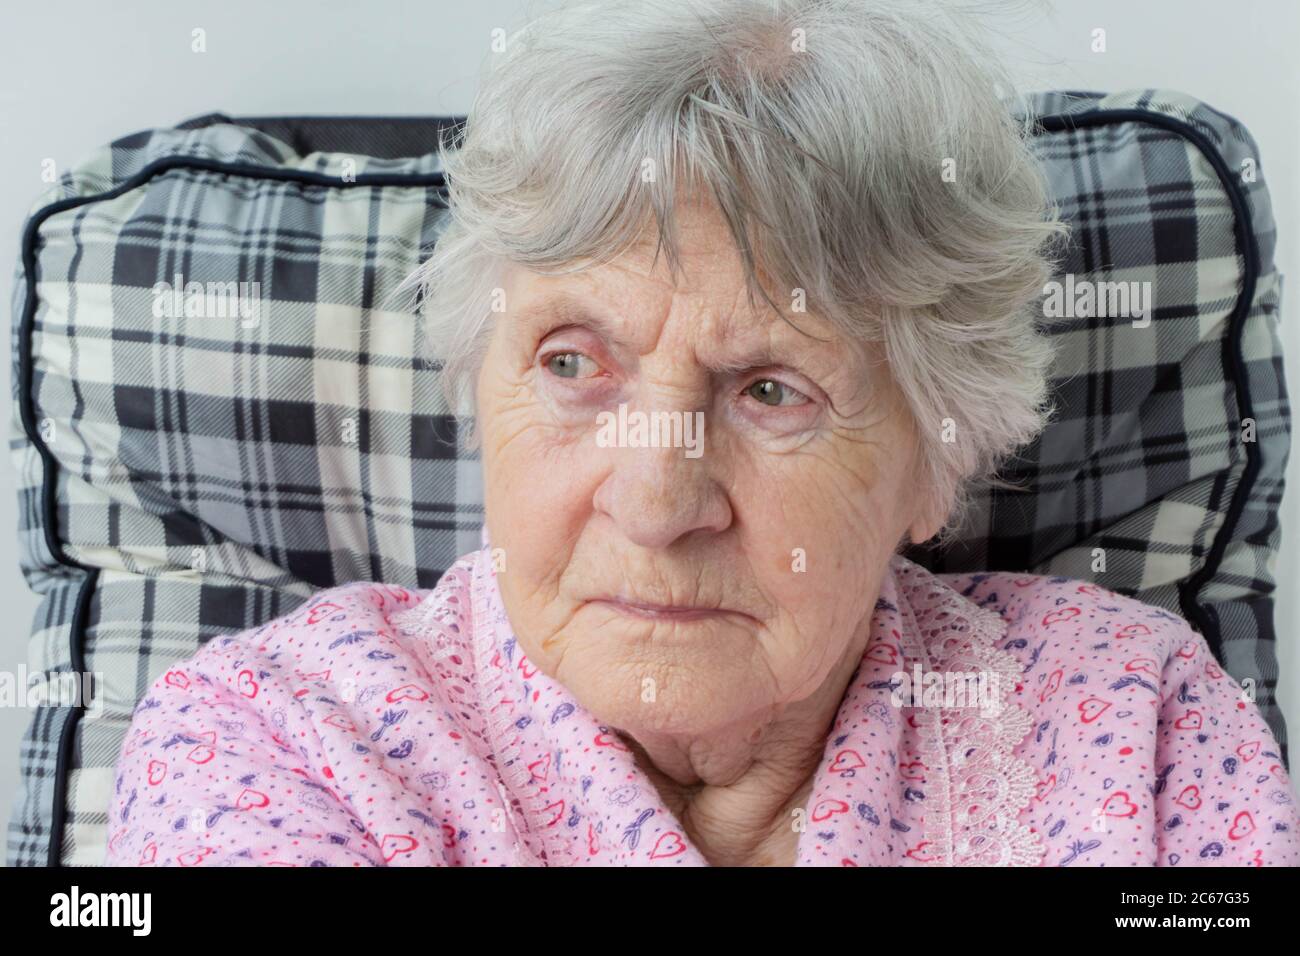 Portrait de la vieille femme âgée avec des rides sur le visage et les cheveux gris. Femme de tête avec rides. Gros plan de la grande mère assise sur une chaise. Grand-mère por Banque D'Images